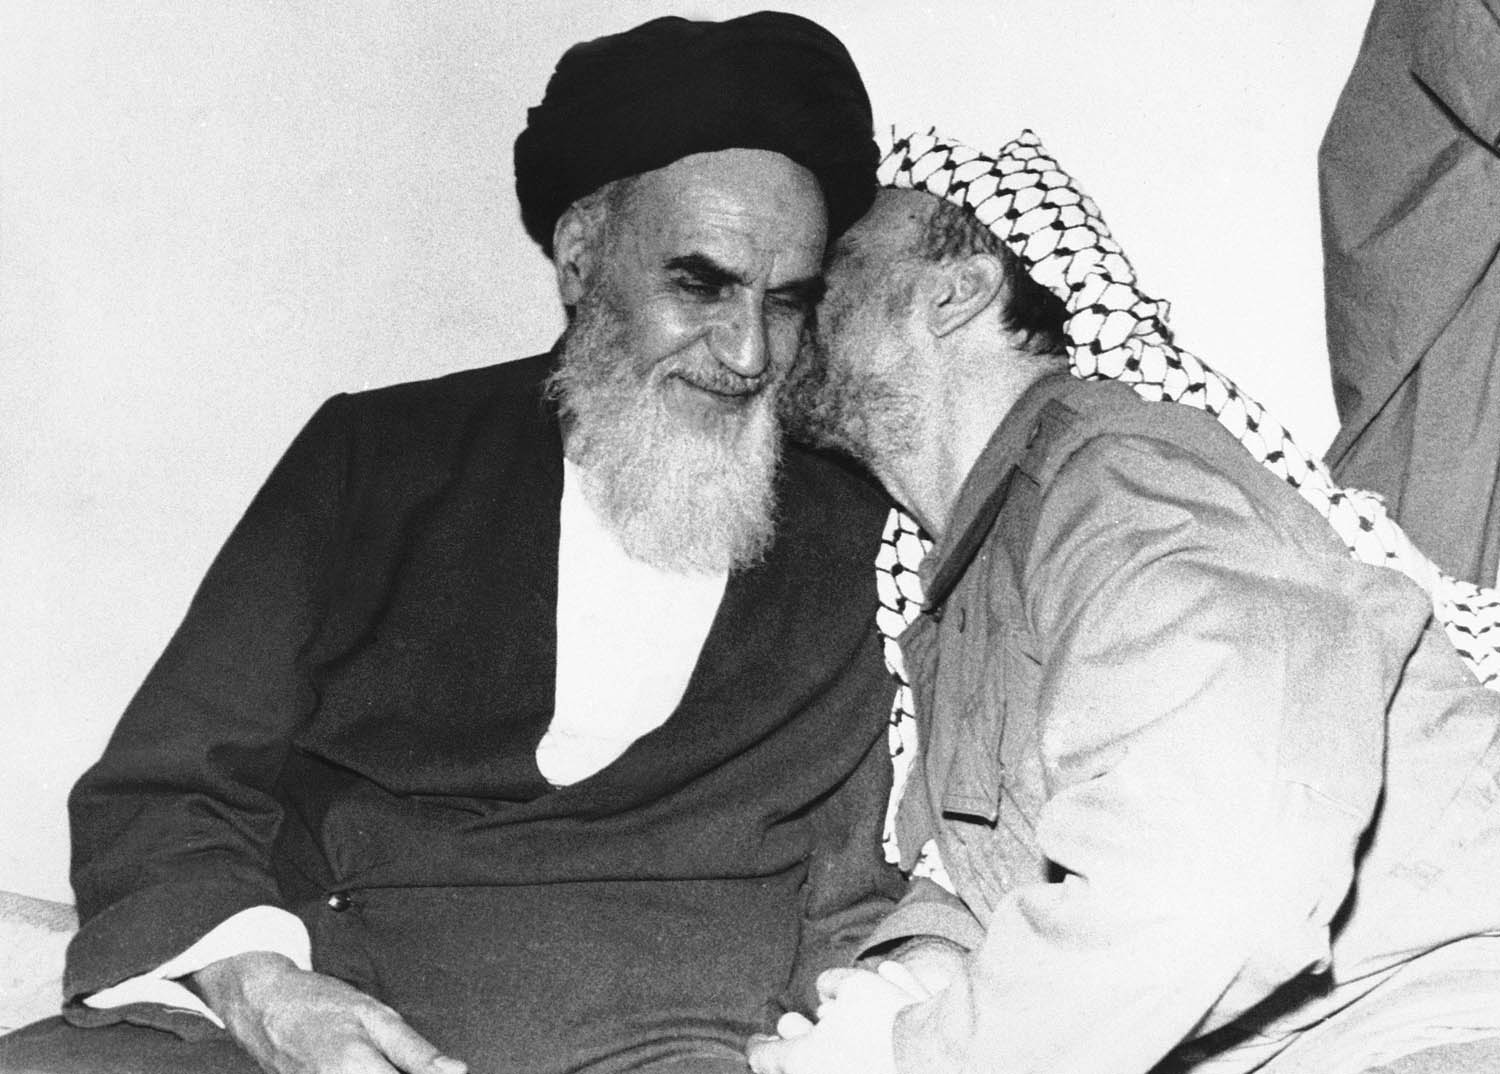 الزعيم الفلسطيني ياسر عرفات يقبل آية الله الخميني في مقره في طهران